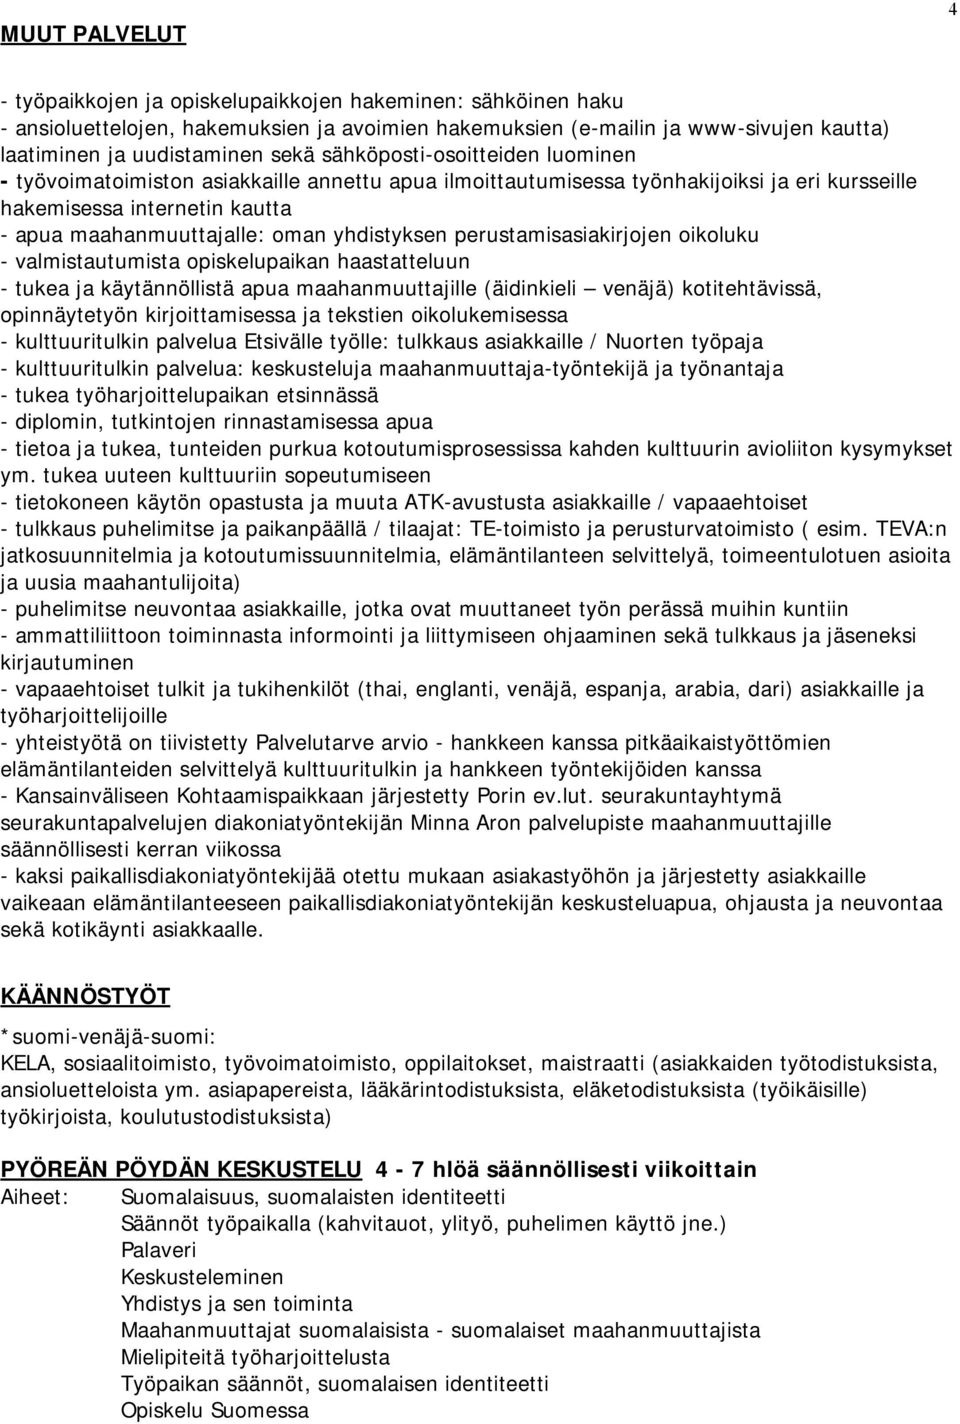 yhdistyksen perustamisasiakirjojen oikoluku - valmistautumista opiskelupaikan haastatteluun - tukea ja käytännöllistä apua maahanmuuttajille (äidinkieli venäjä) kotitehtävissä, opinnäytetyön